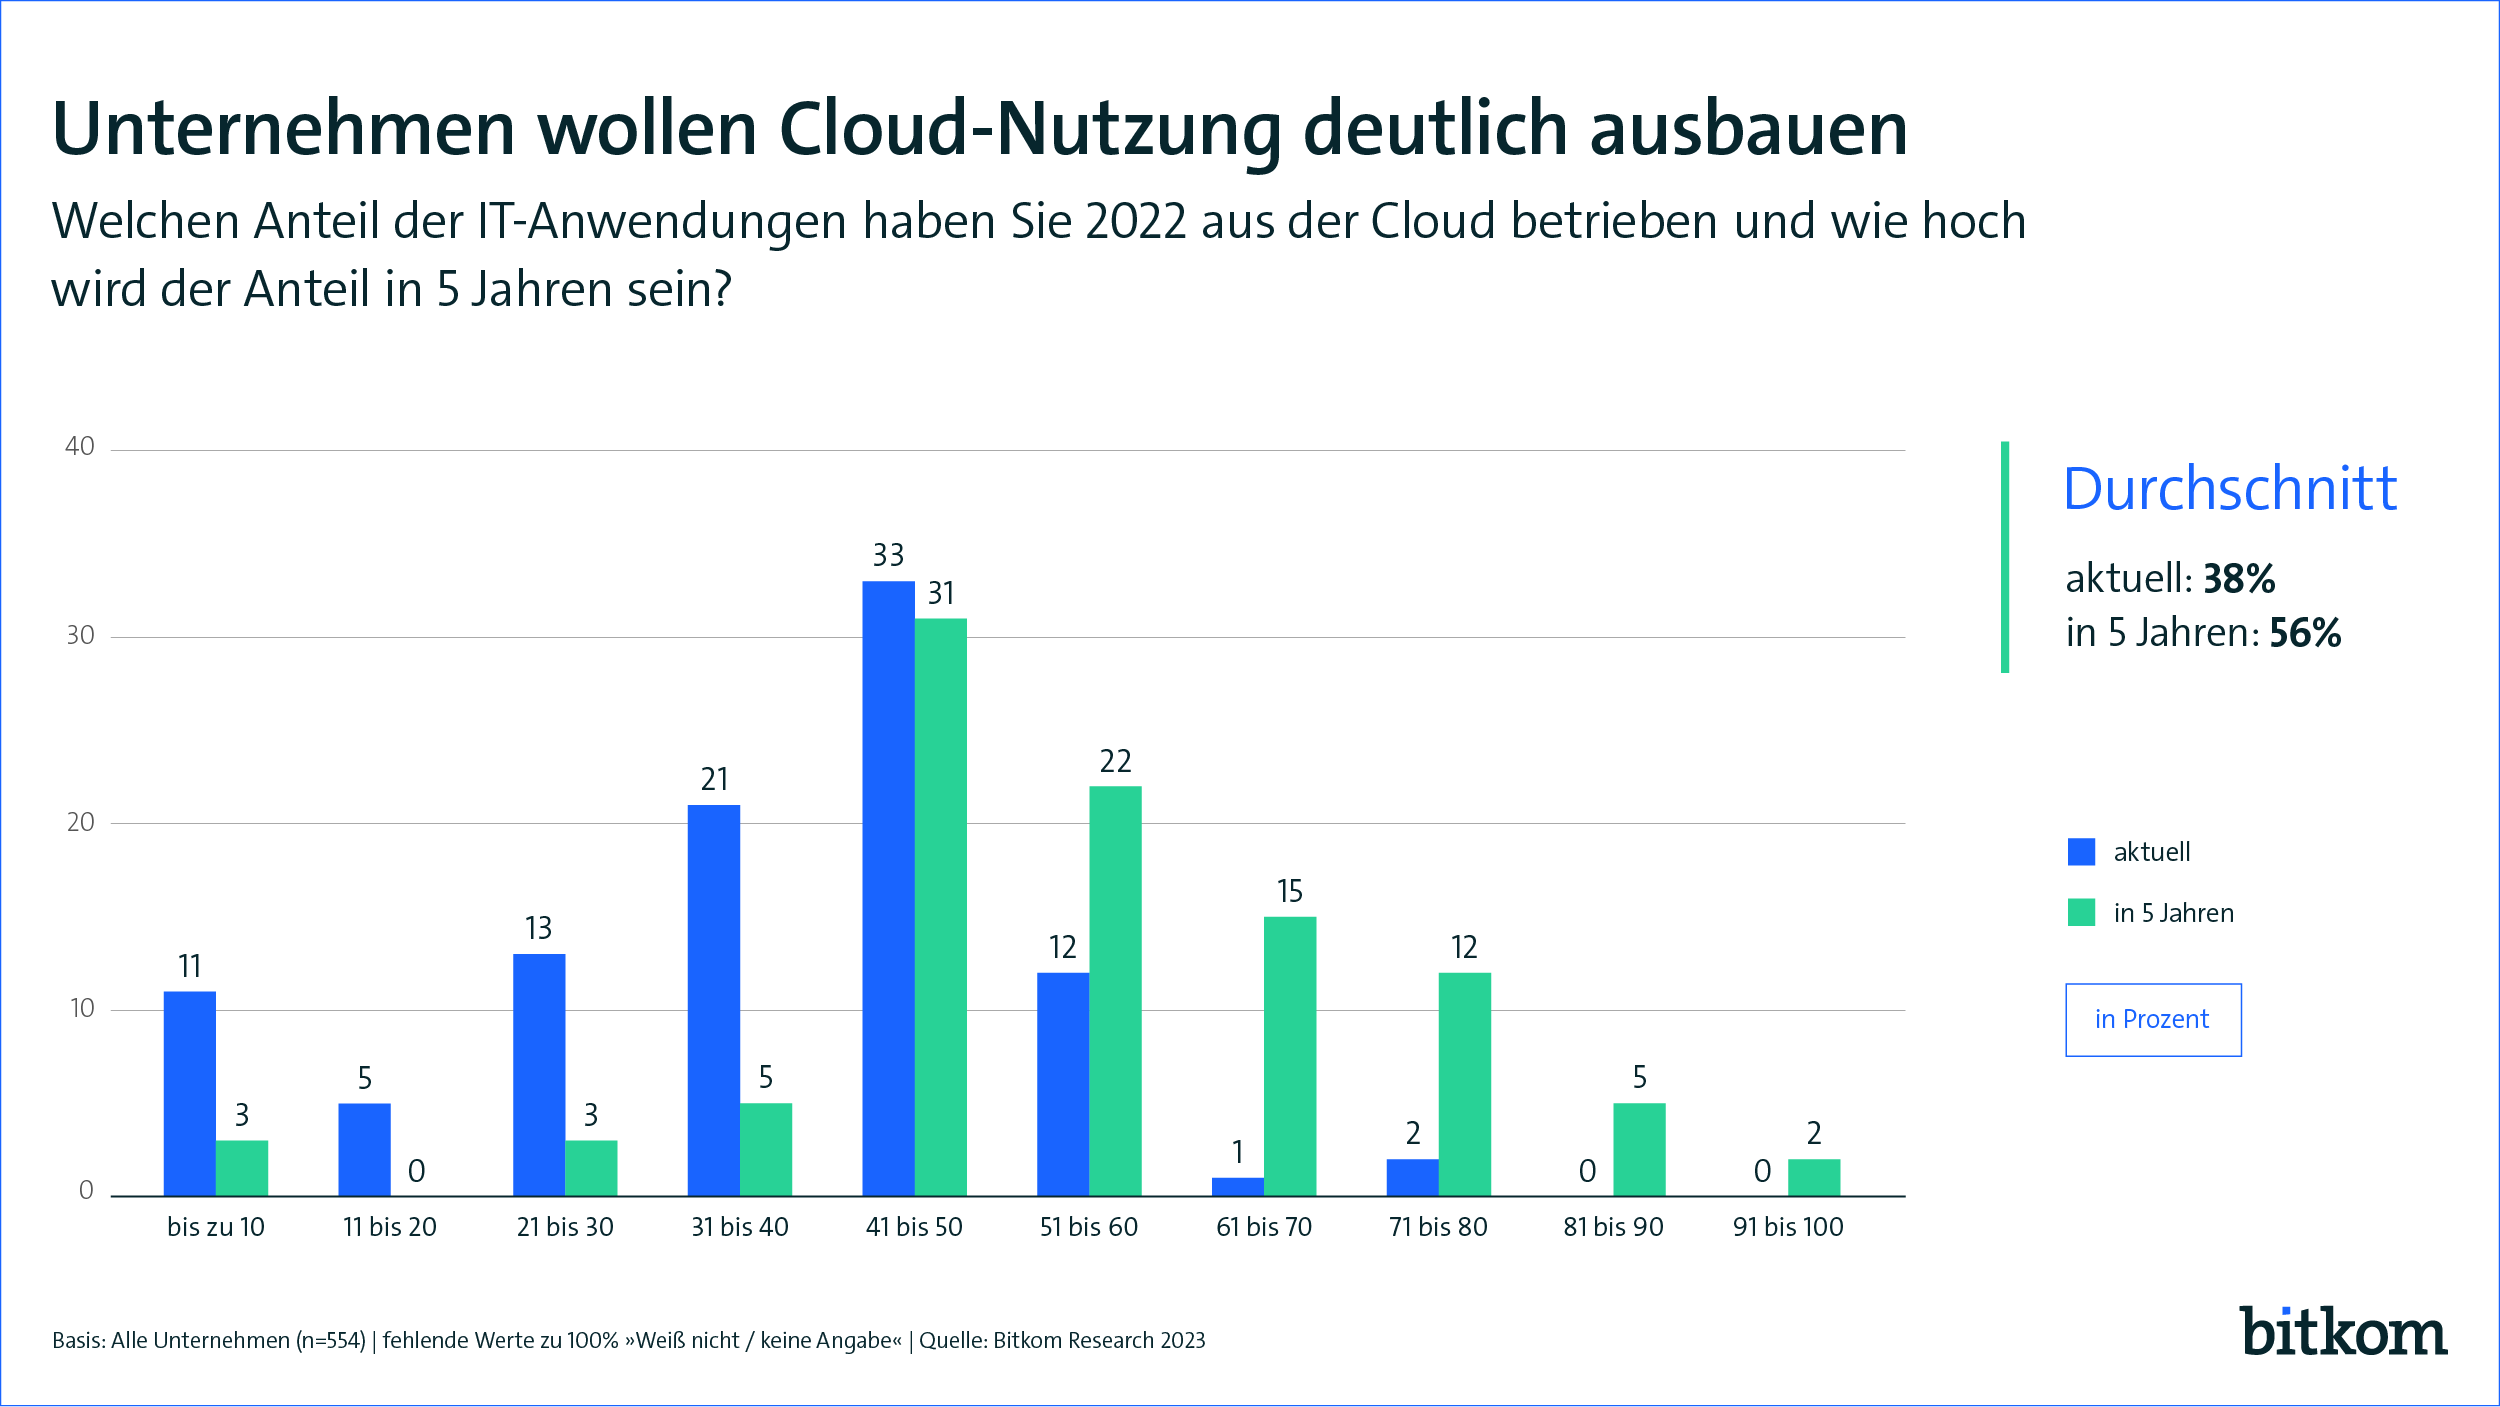 Cloudnutzung in Deutschland nimmt zu